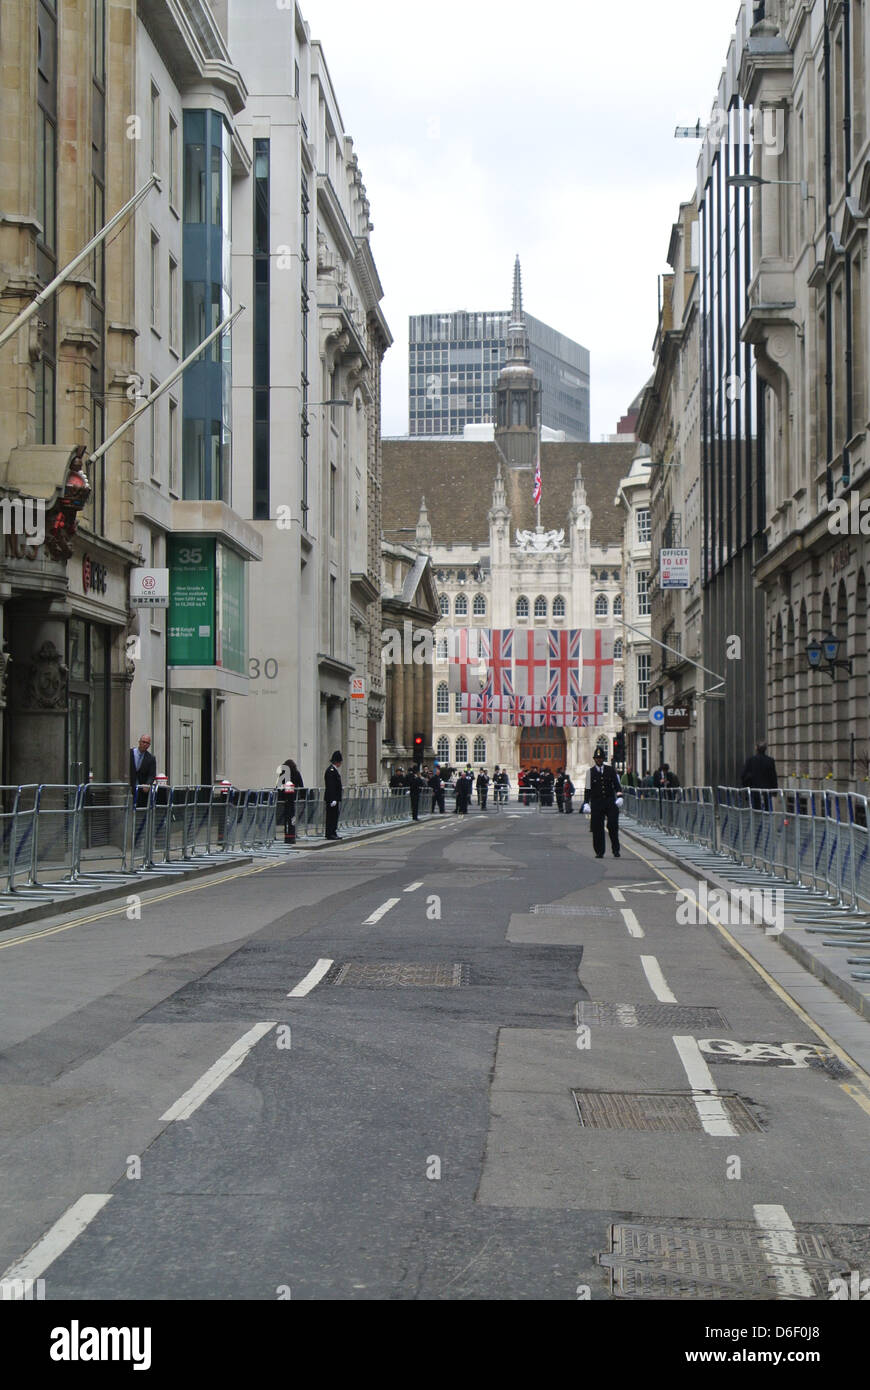 Strade vuote, senza traffico, automobili, autobus. Giorno di Margaret Thatchers funerale. Londra. Inglese, bandiere bandiere britanniche, poliziotto Foto Stock